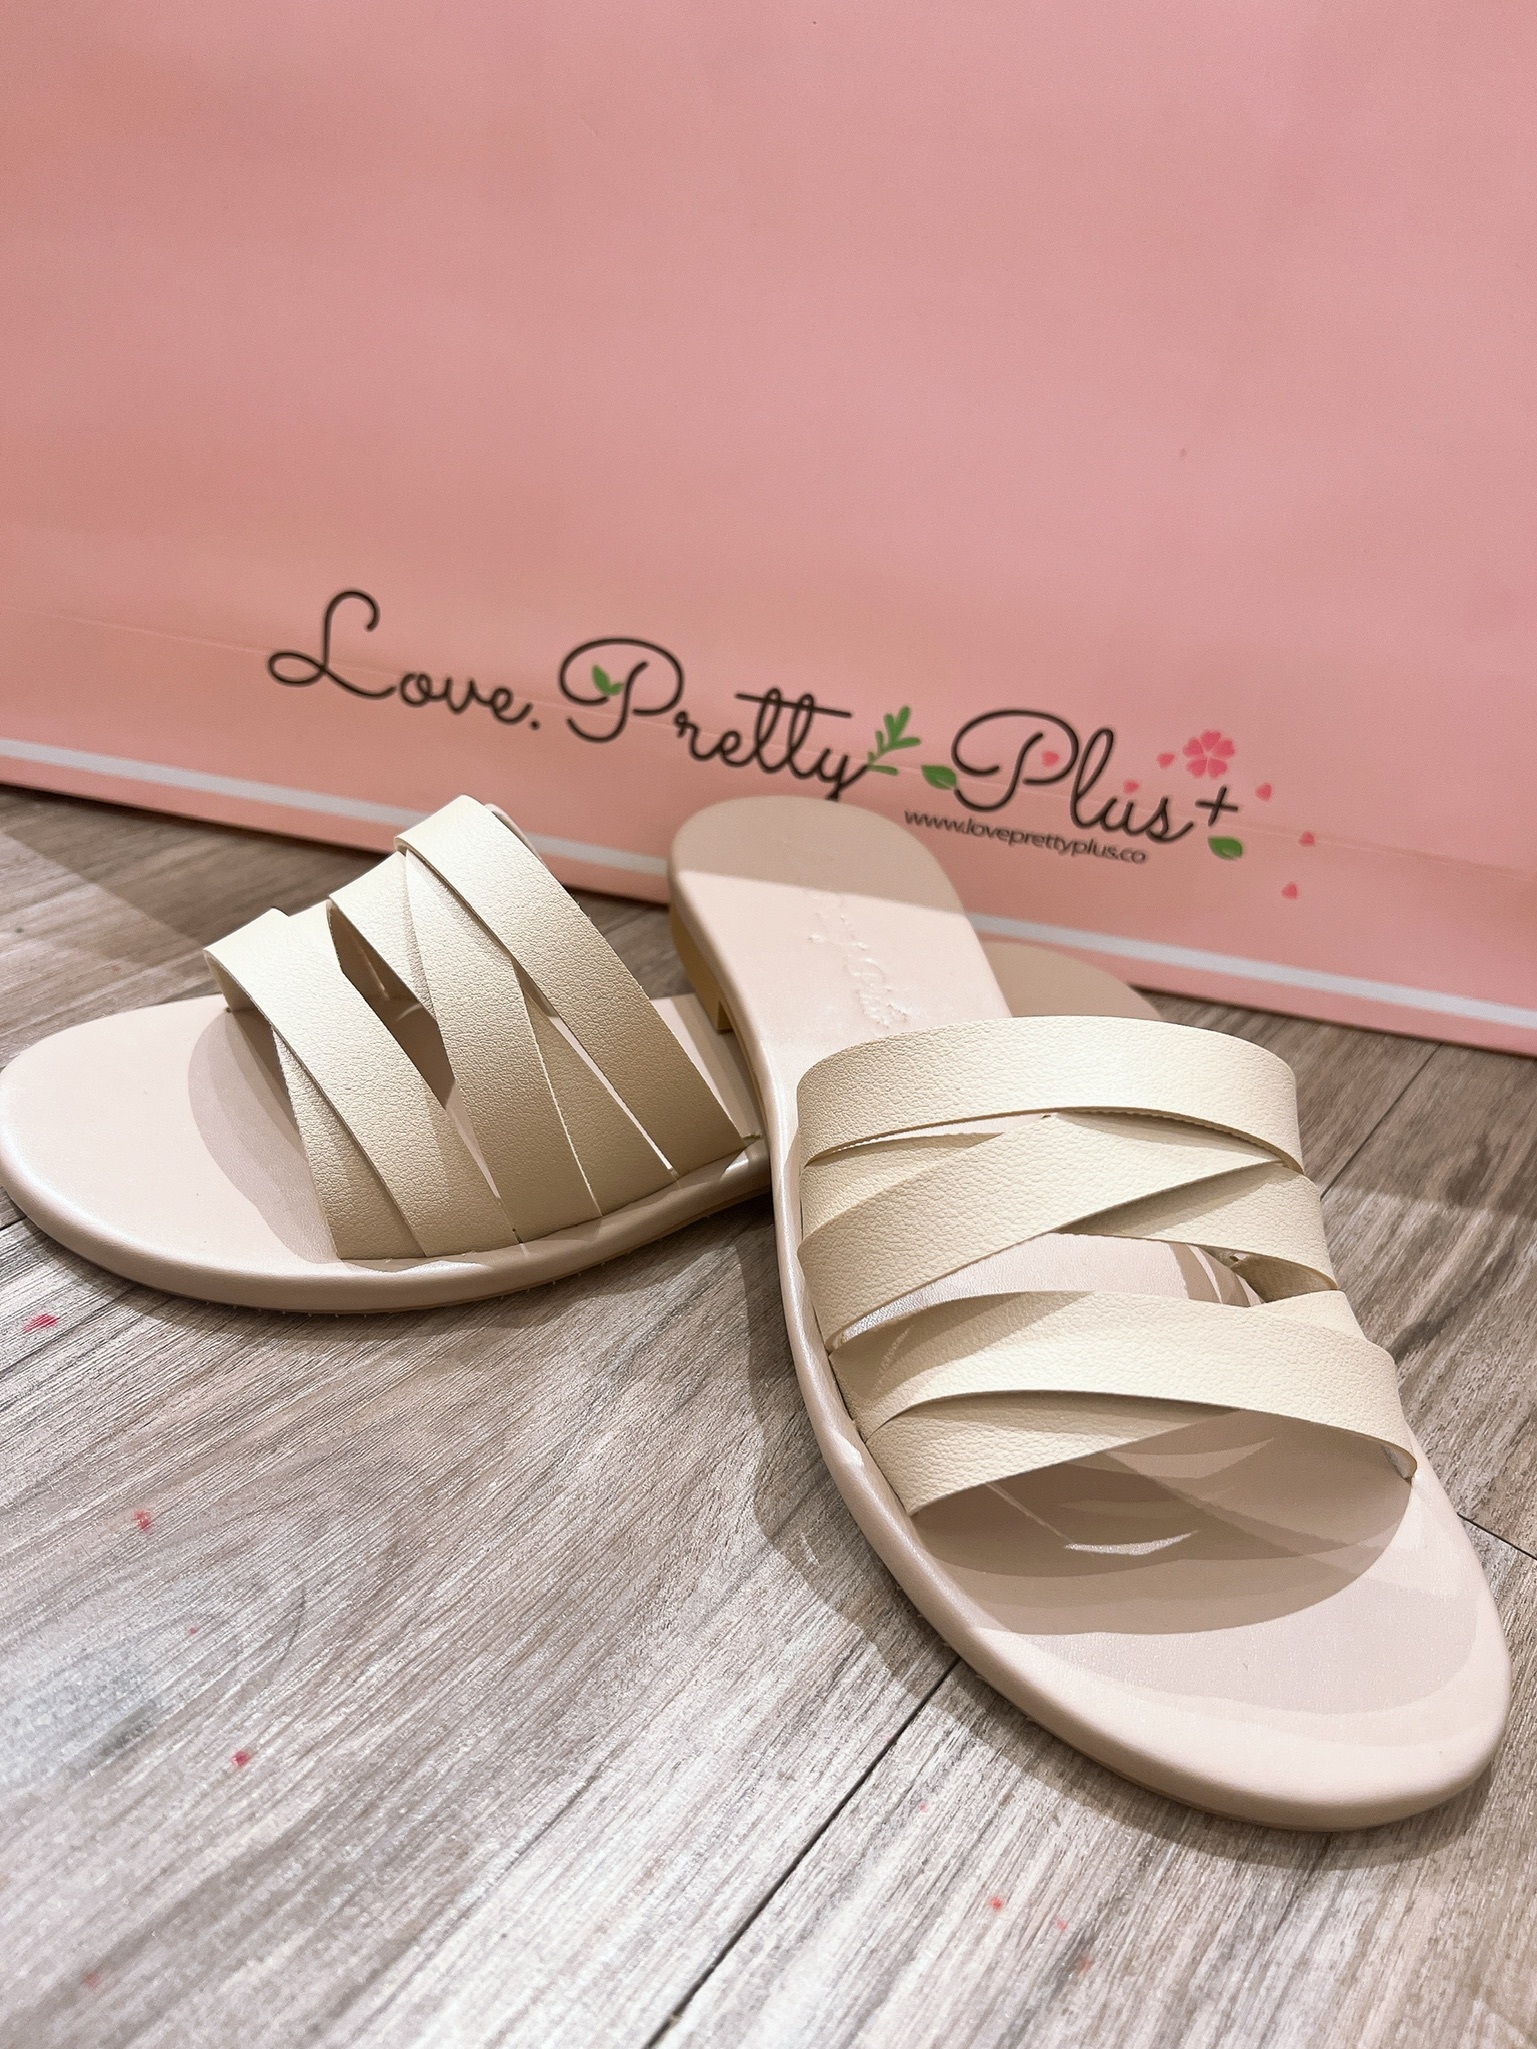 Love+ Maci Brown Sandals  | LPP07 |2 Colors